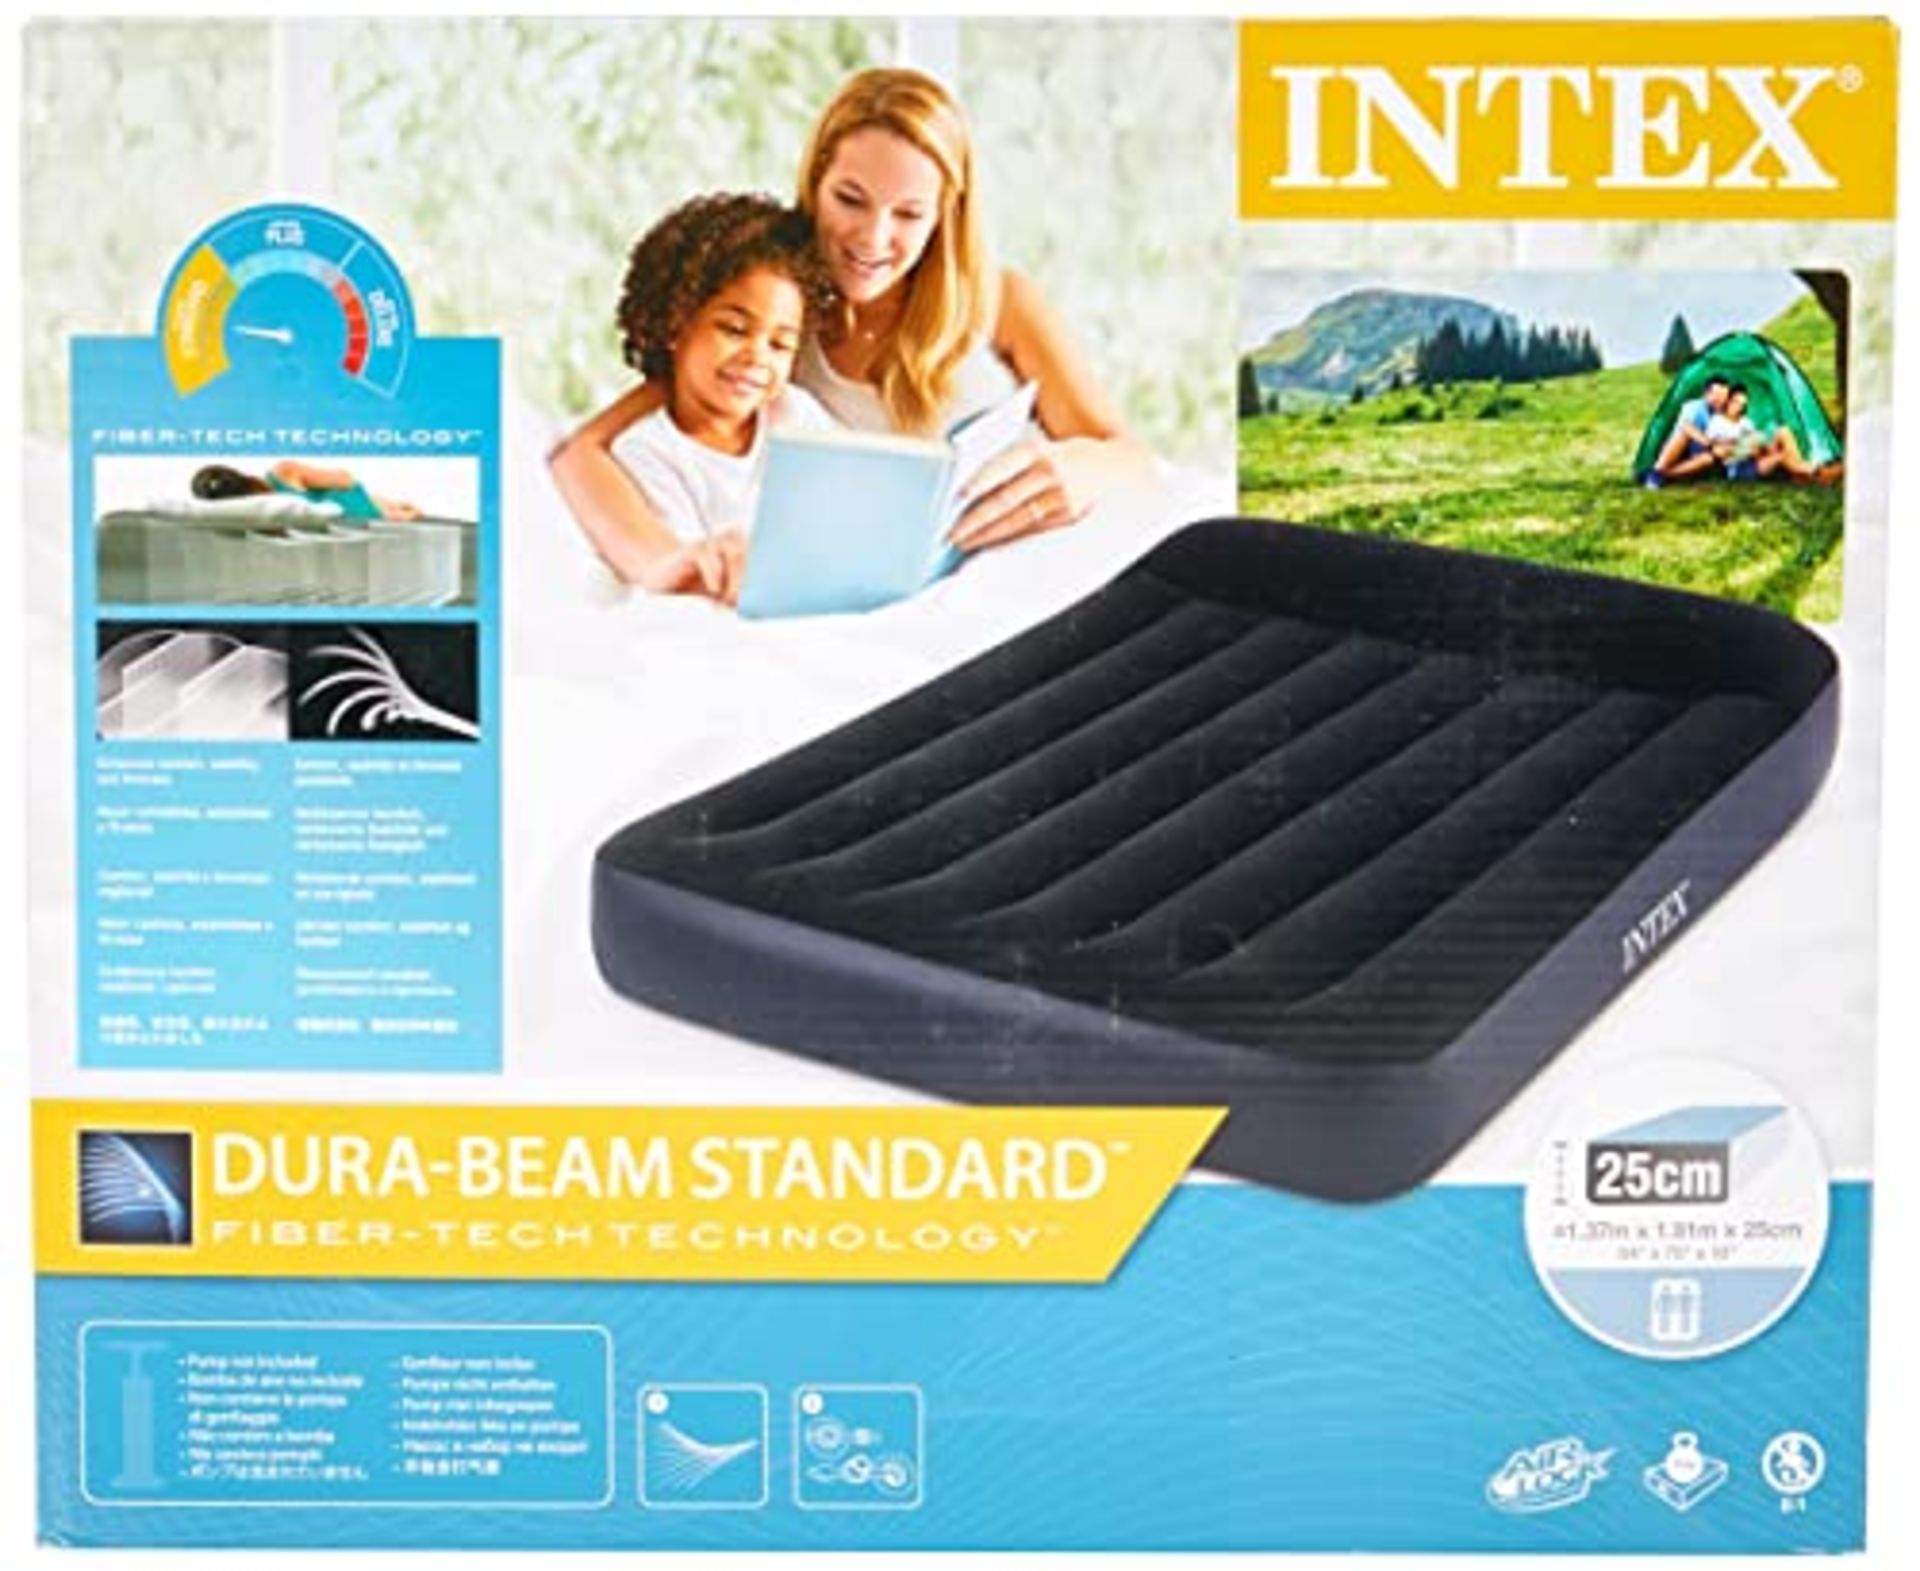 Intex 64141 Dura Beam Pillow Rest single mattress with Fiber Tech technology, without